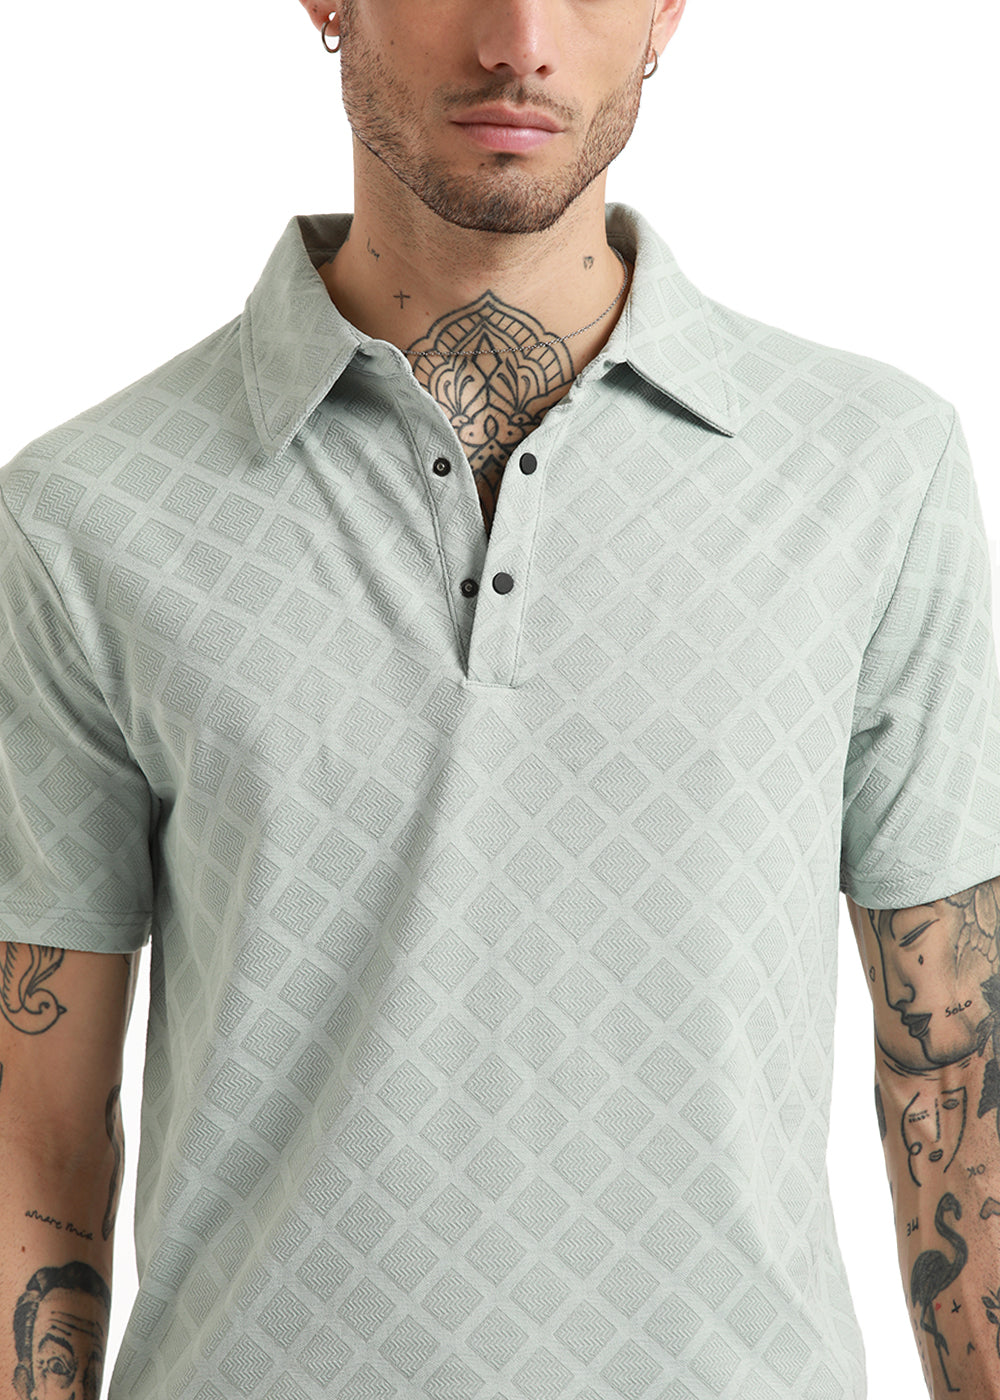 Lattice Print Gray Polo Tshirt